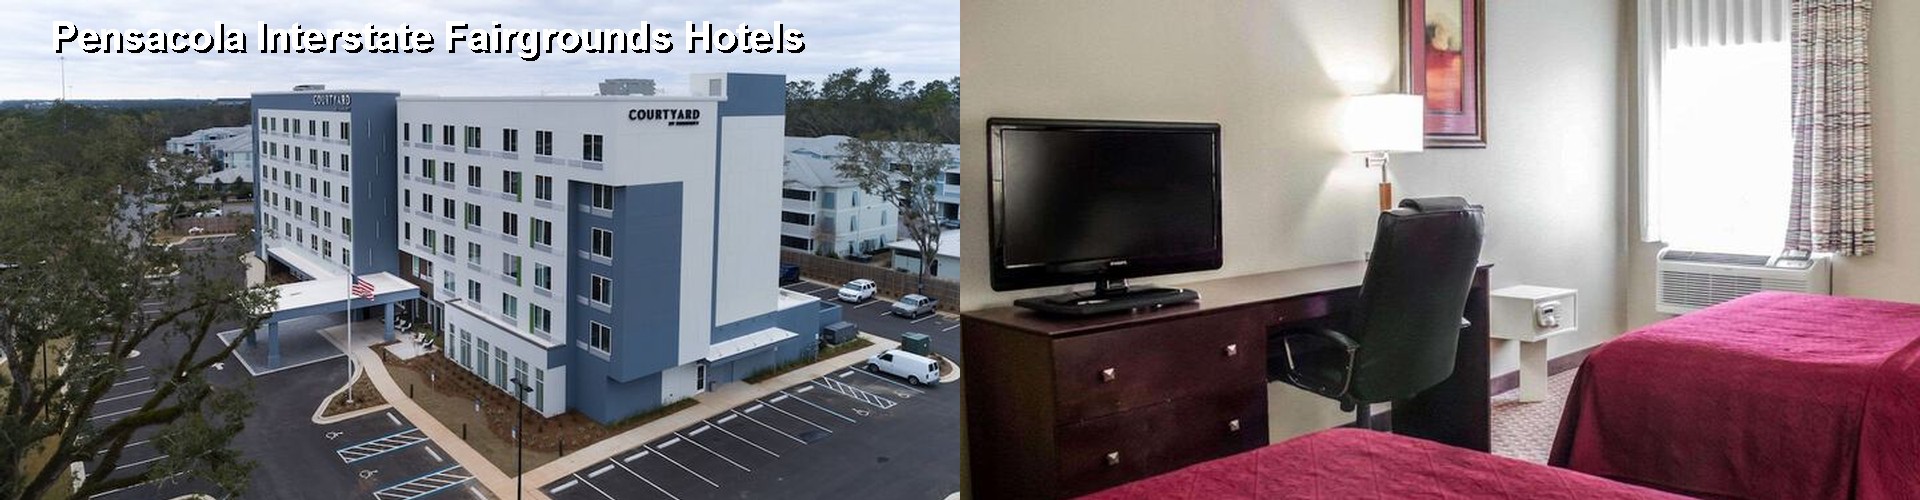 4 Best Hotels near Pensacola Interstate Fairgrounds